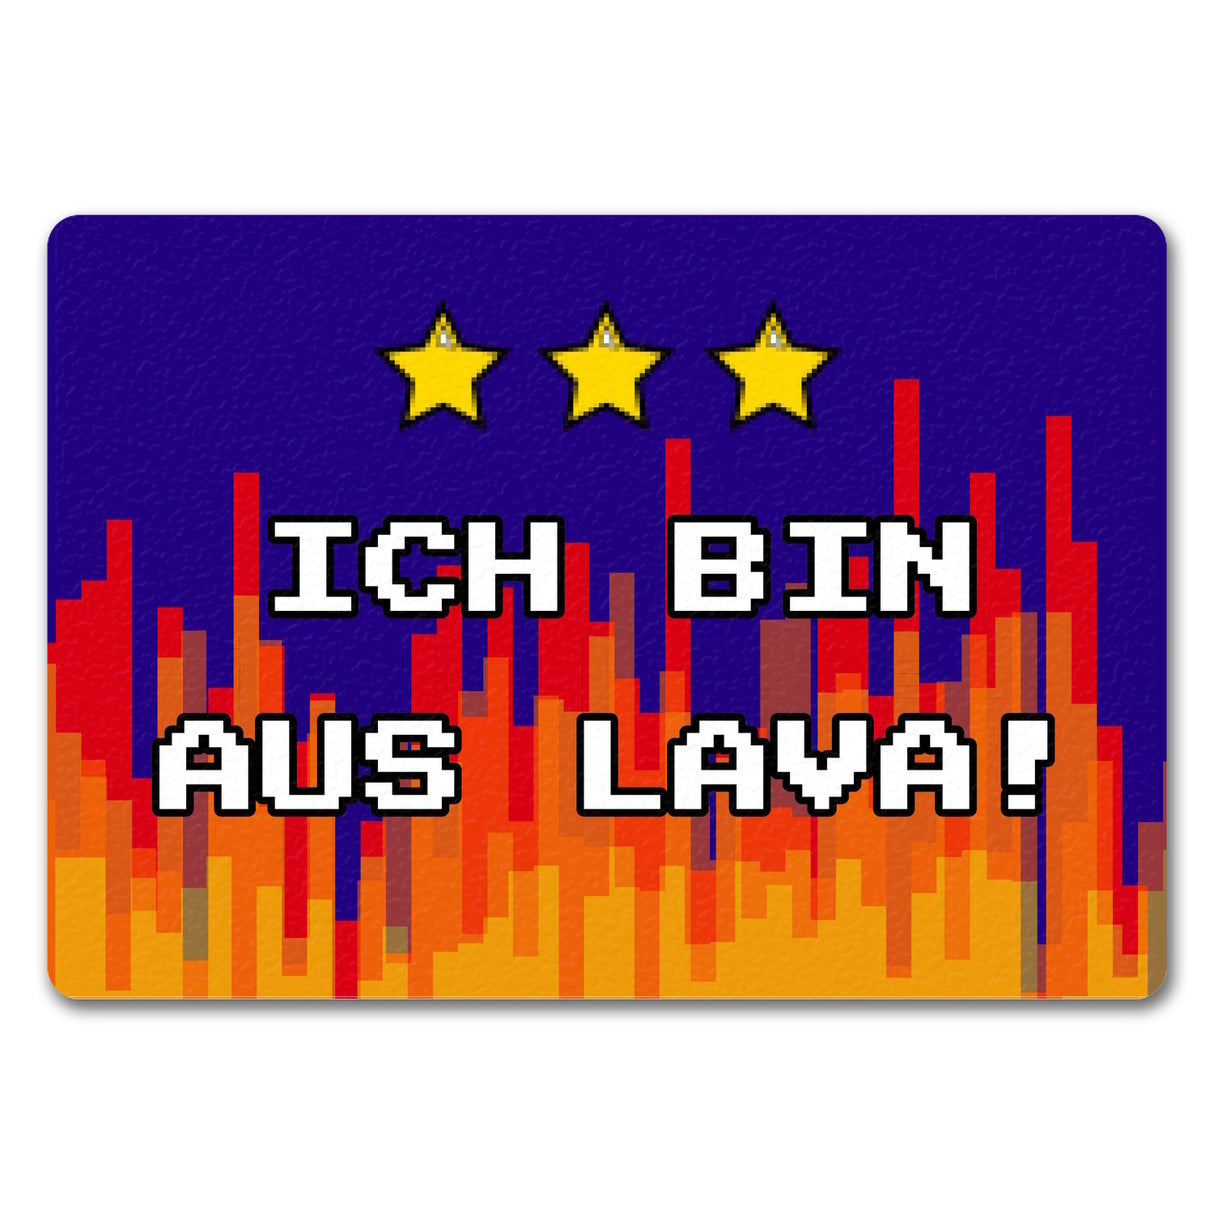 Fußmatte in 35x50 cm mit Pixelmotiv und Spruch: Ich bin aus Lava! Boden Feuer